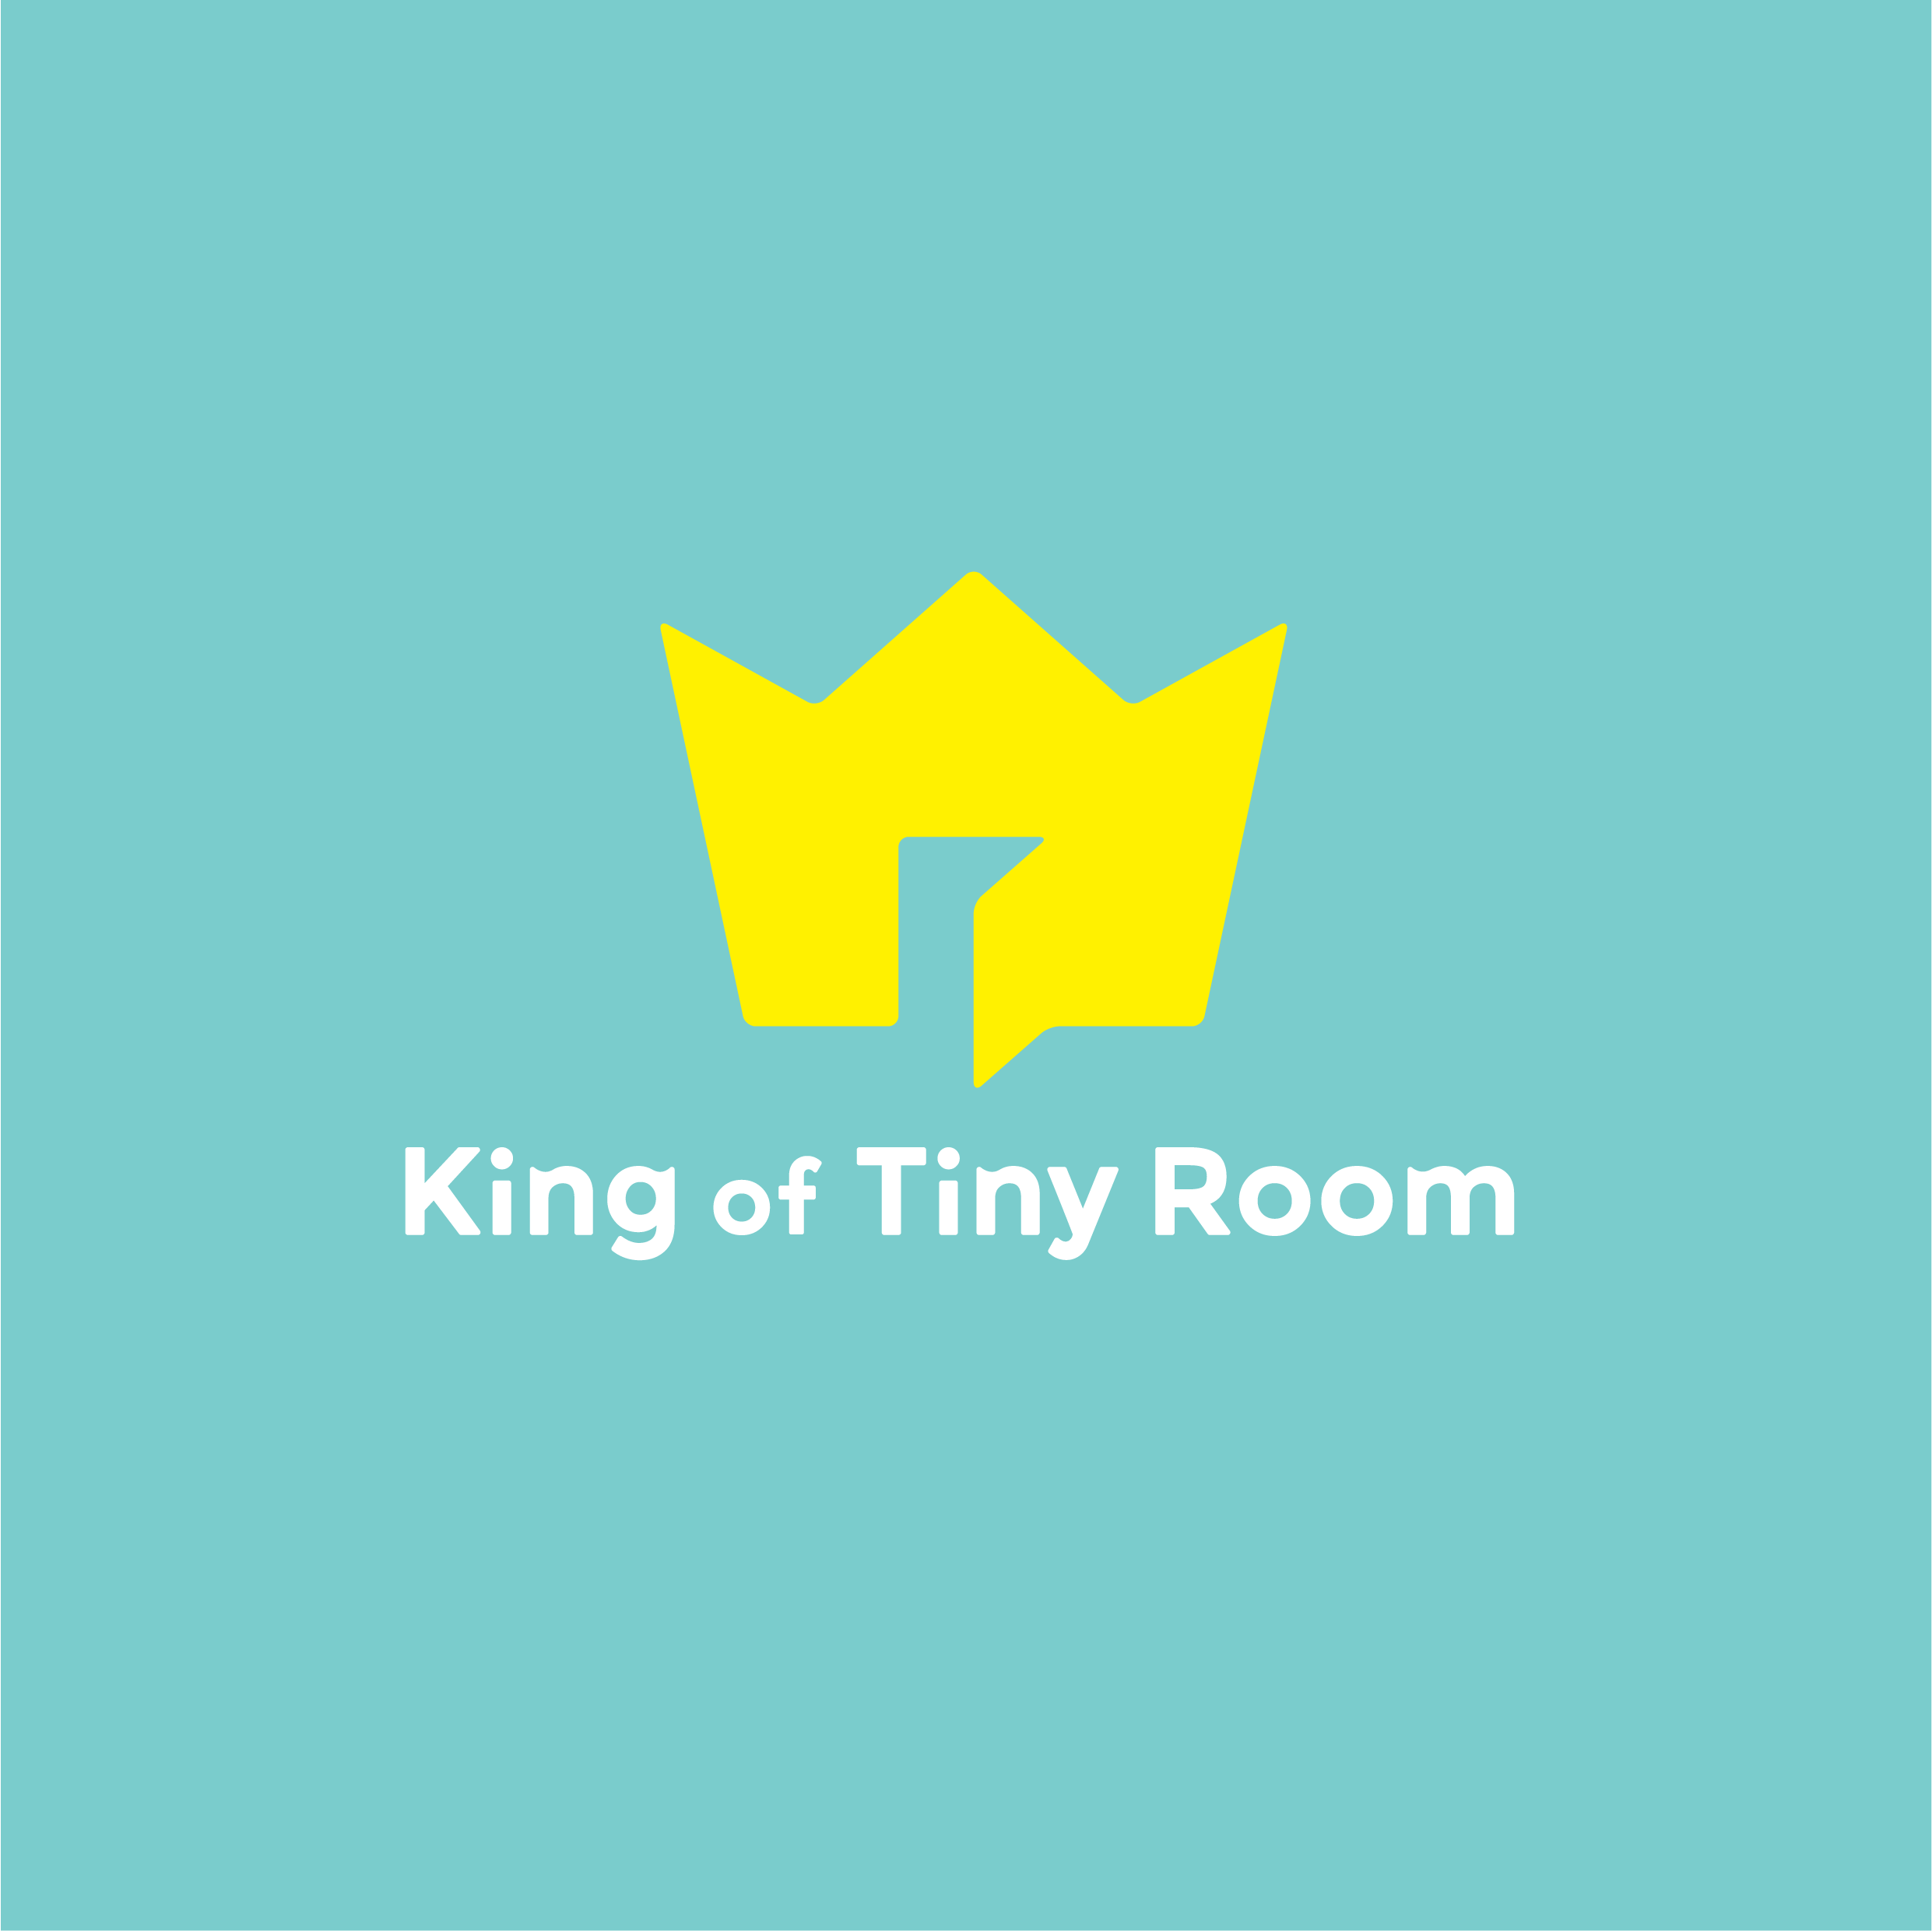 株式会社 King of Tiny Room